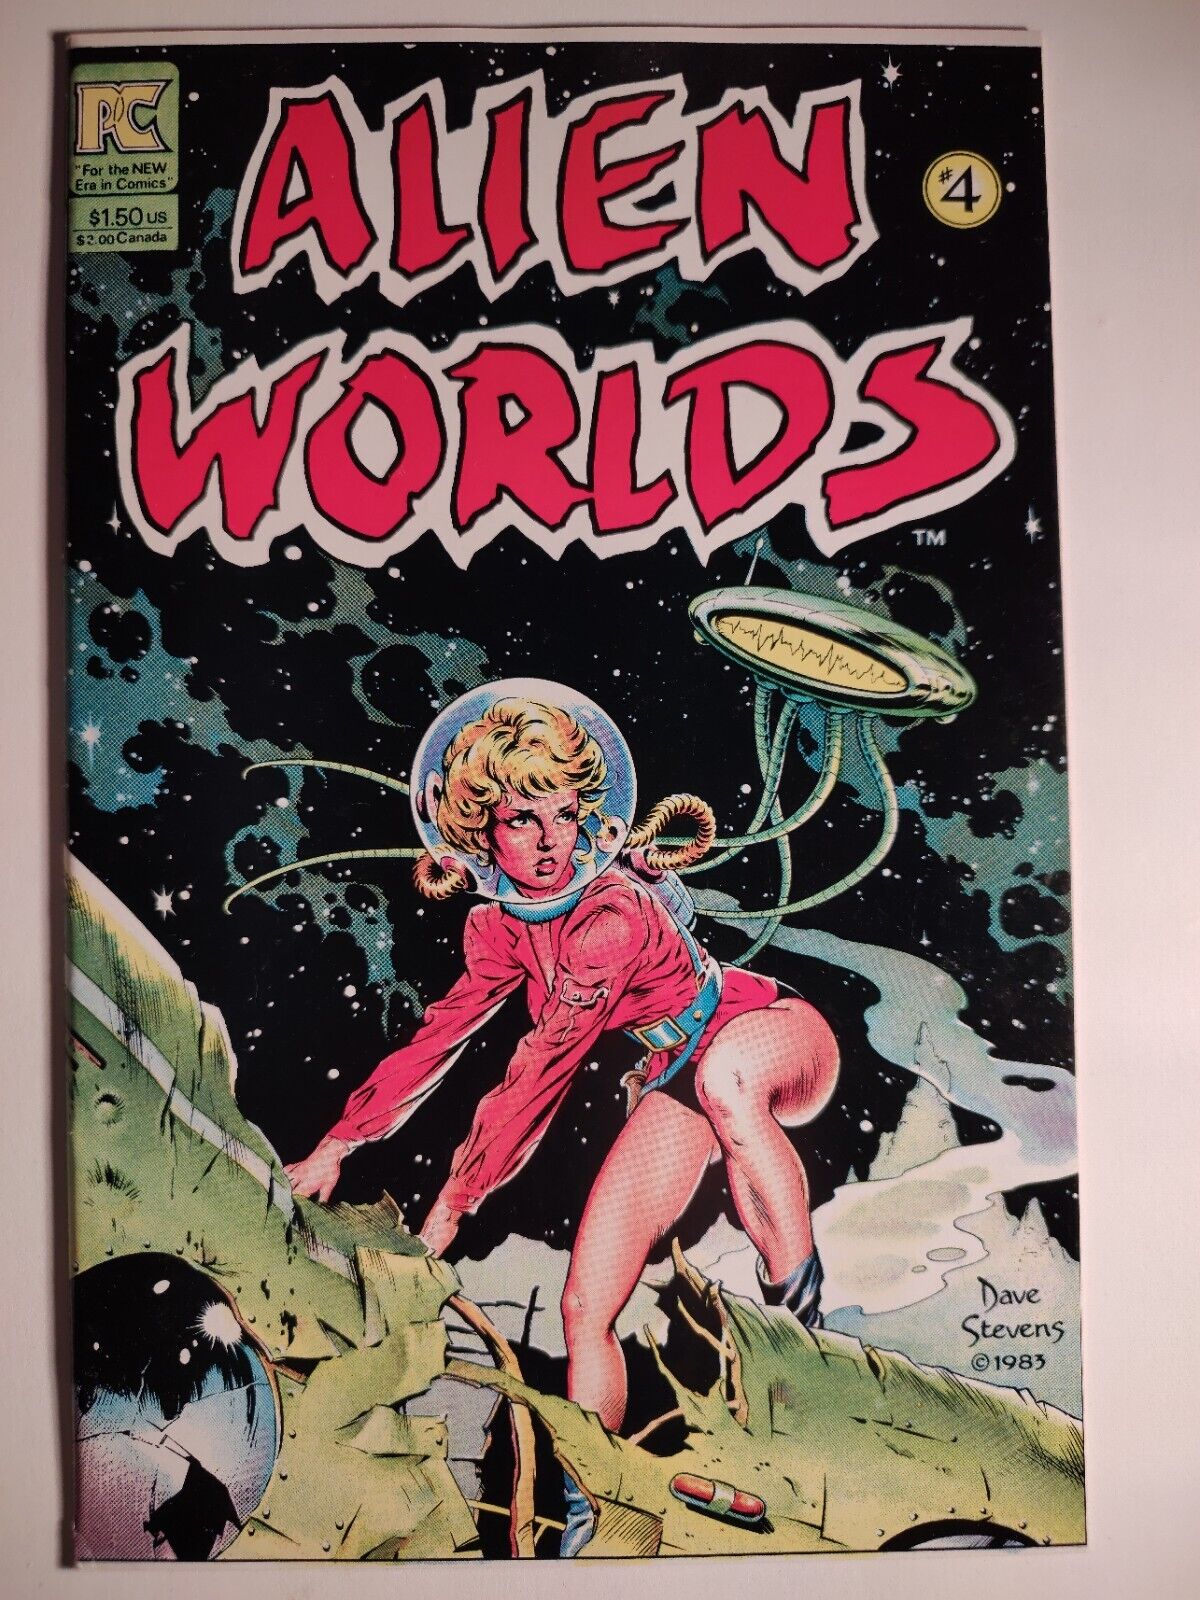 Alien Worlds #4, VF+, Pacific Comics 1983, Dave Stevens, Gorgeous, READ Descrip.